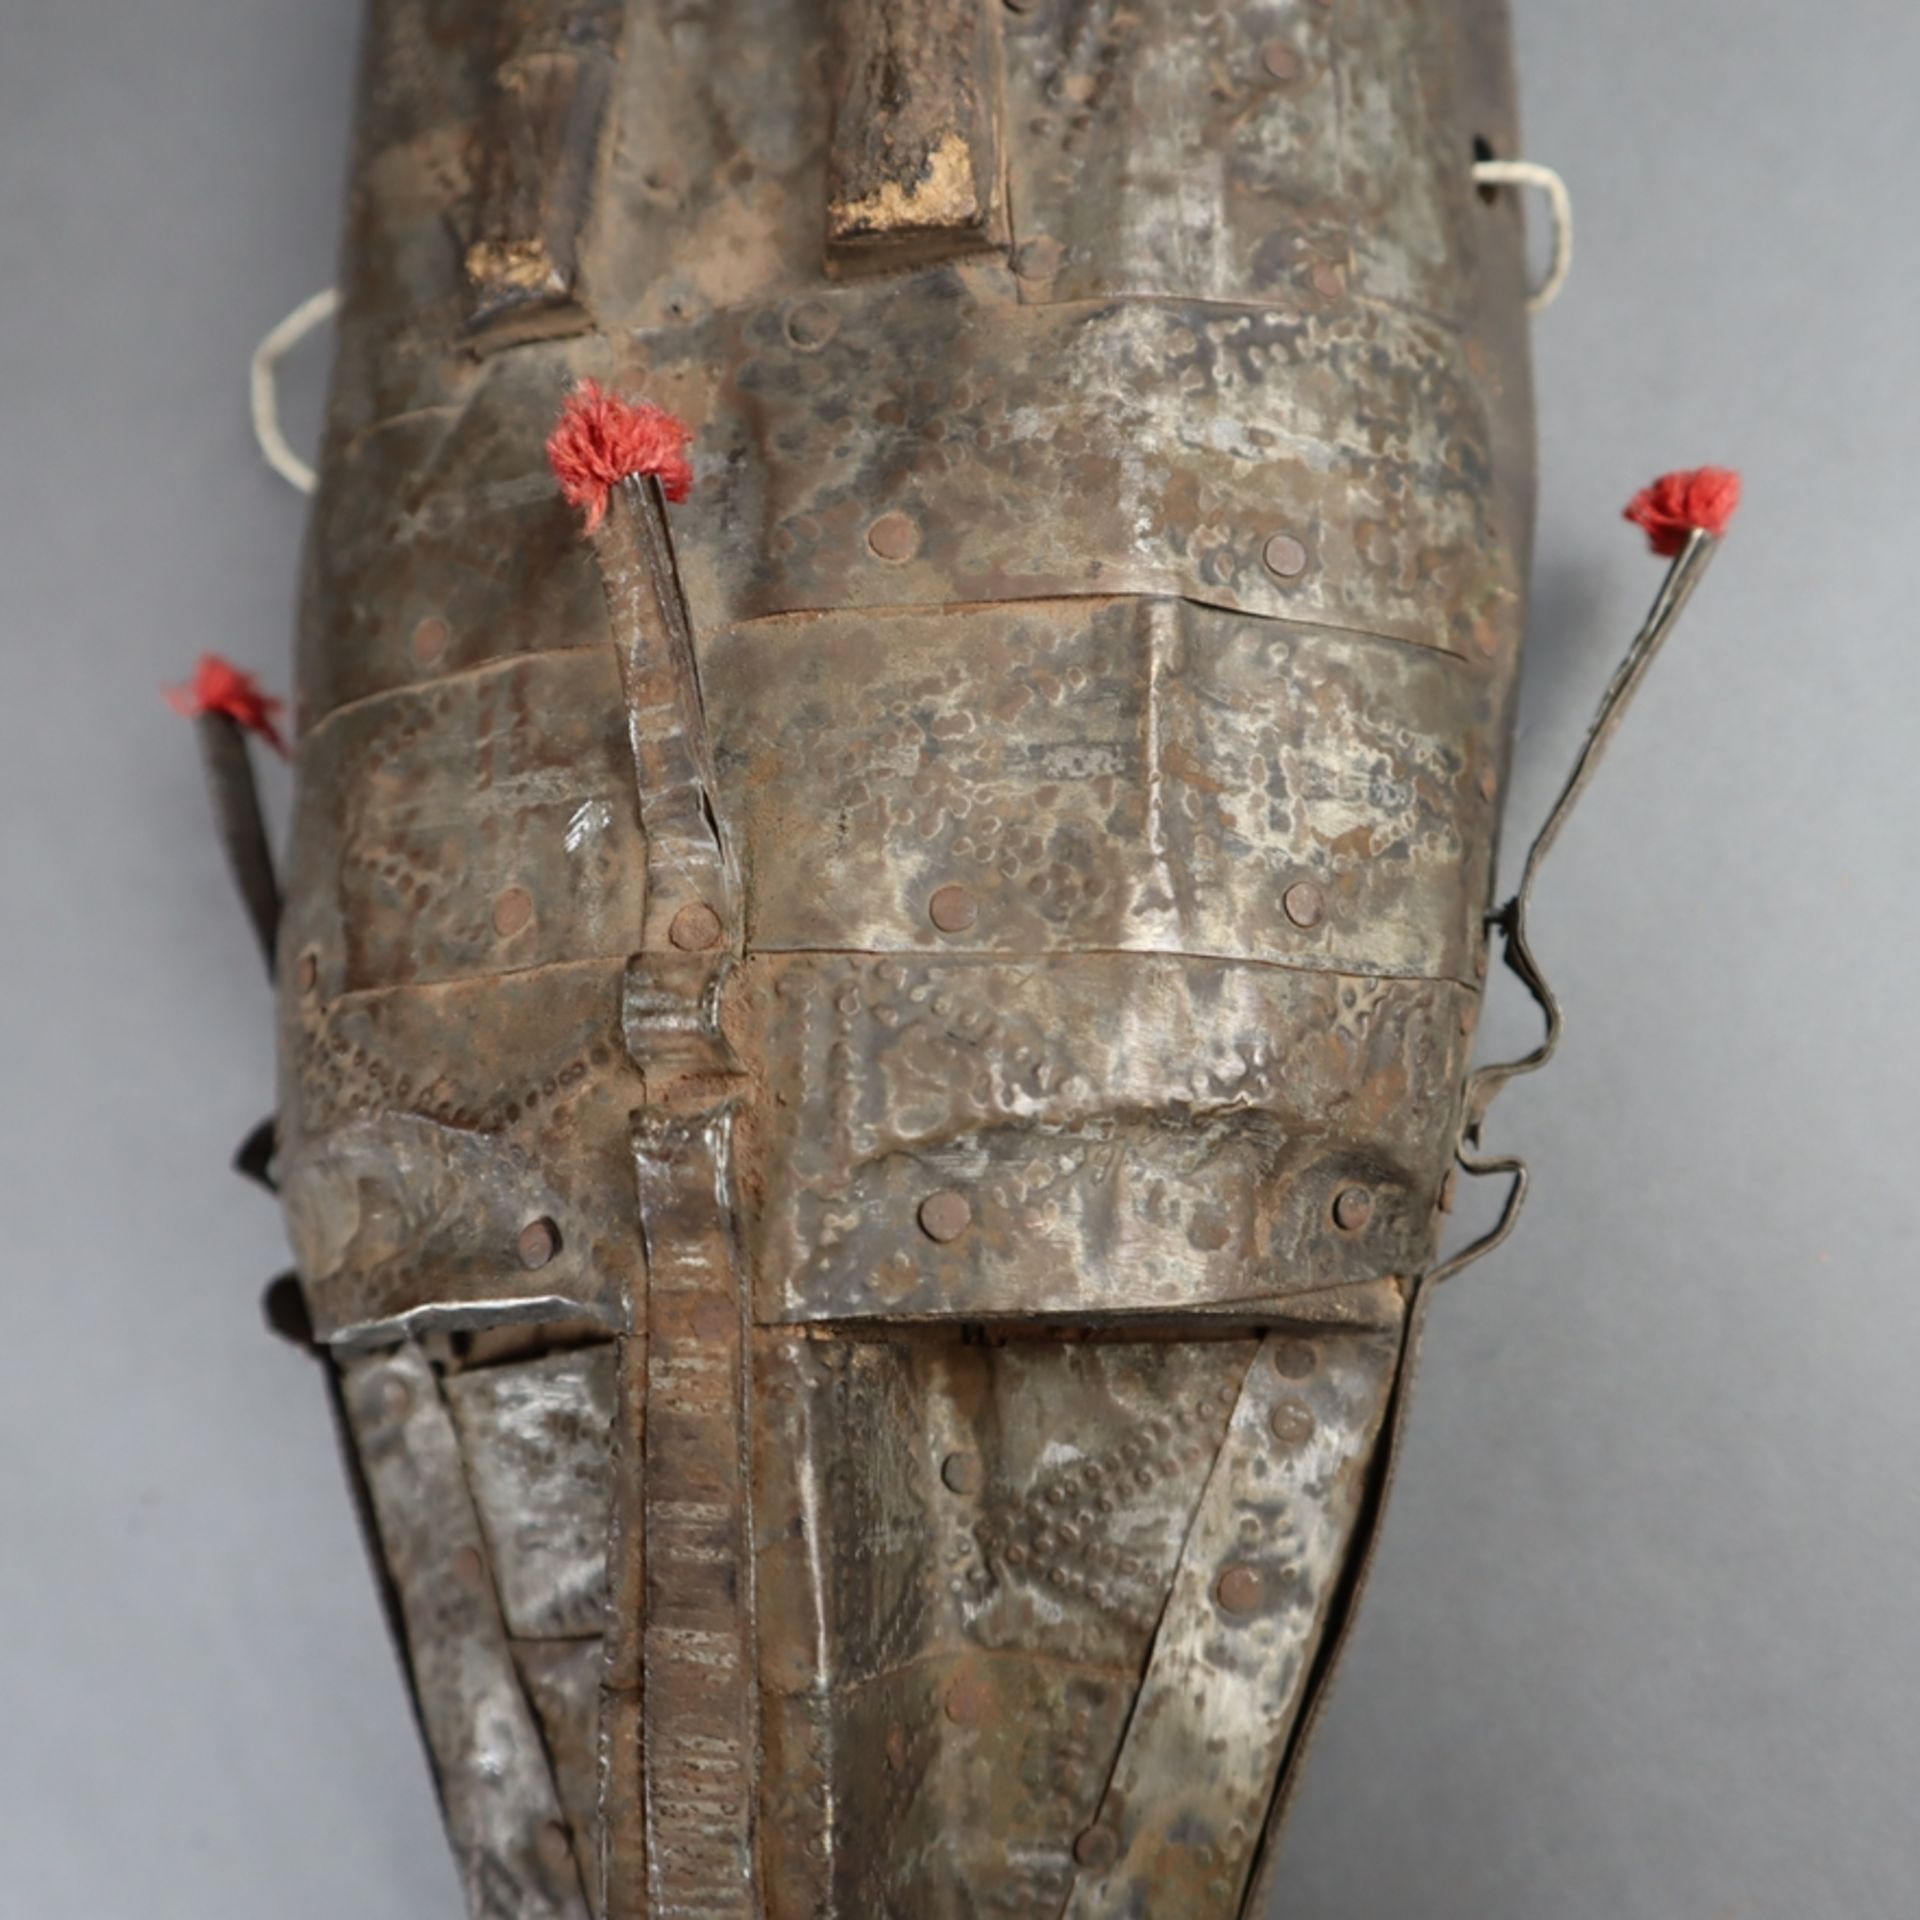 Metallbeschlagene Maske - Bambara/Marka, Mali, Holz/Metallbeschlag/Wolle, schma - Bild 3 aus 6